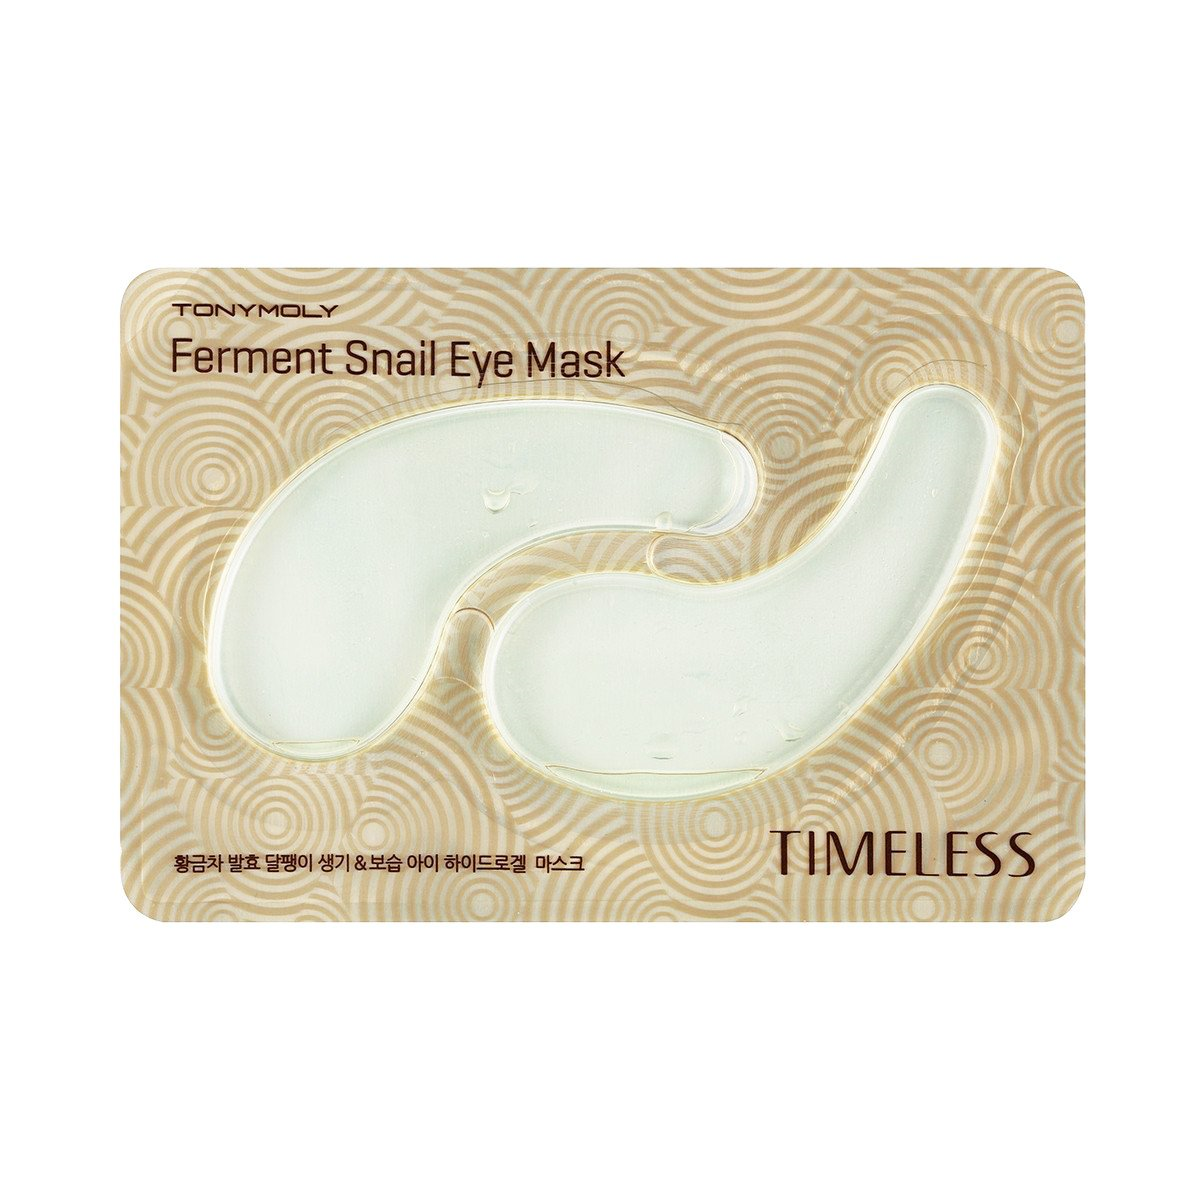 TONYMOLY - Timeless Ferment Snail Eye Mask